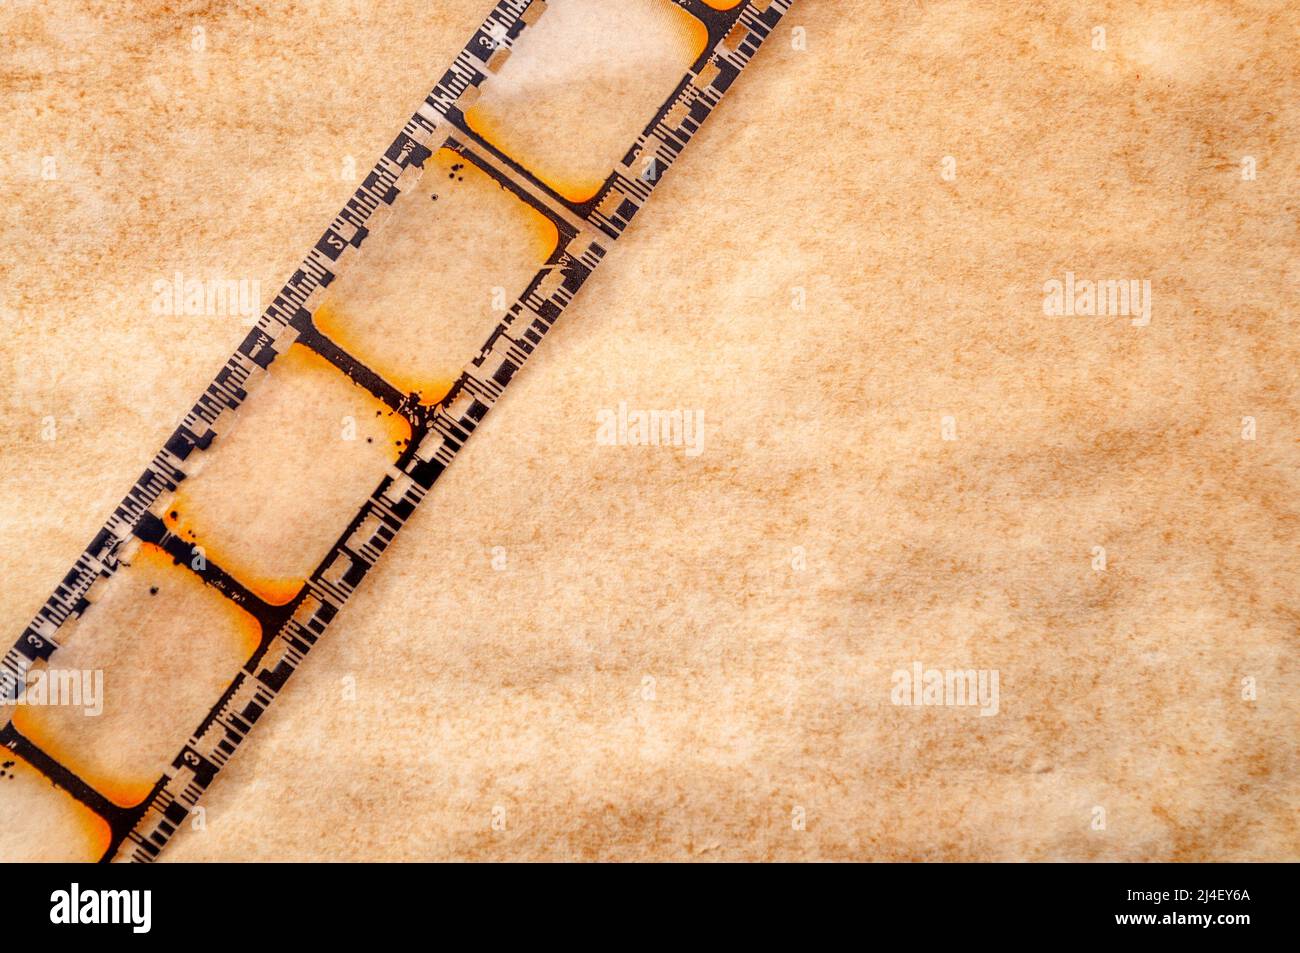 Enregistrement vidéo, film nostalgique et thème de la cinématographie vintage avec gros plan sur la bande de bobines de film rétro isolée sur fond marron grundy W Banque D'Images